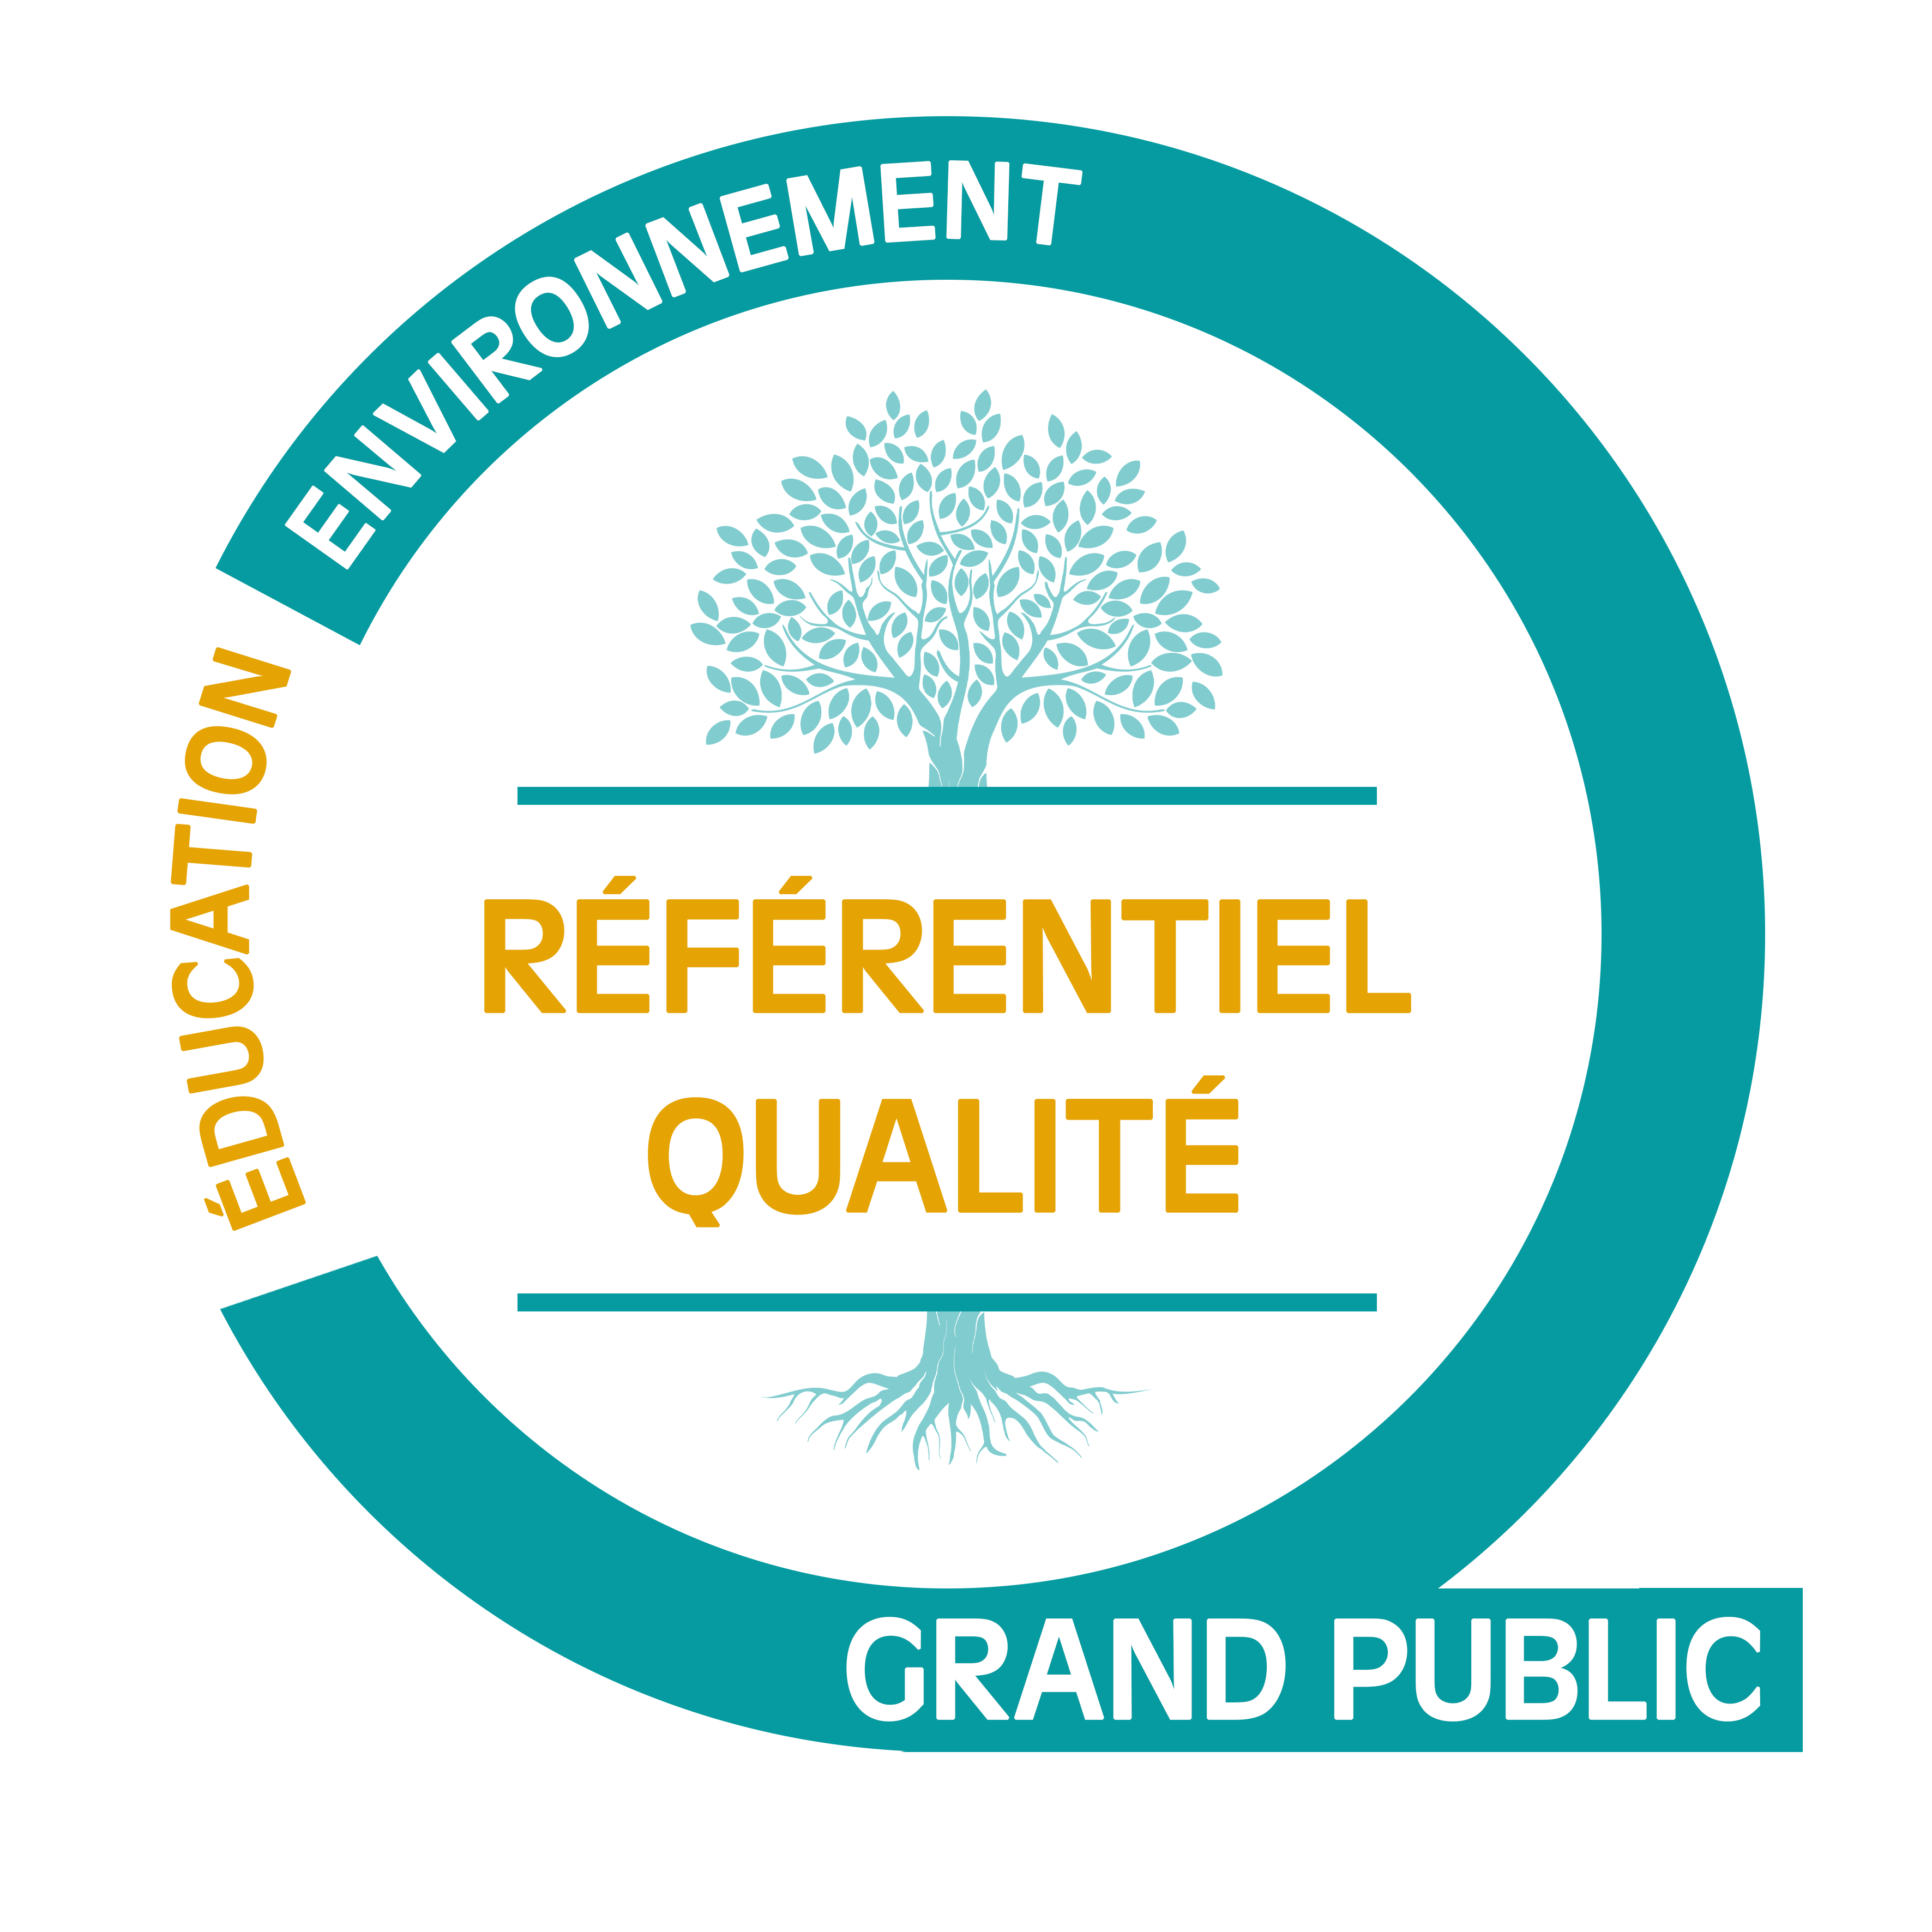 Referentiel Qualite Education Environnement Juin 2021 Grand public